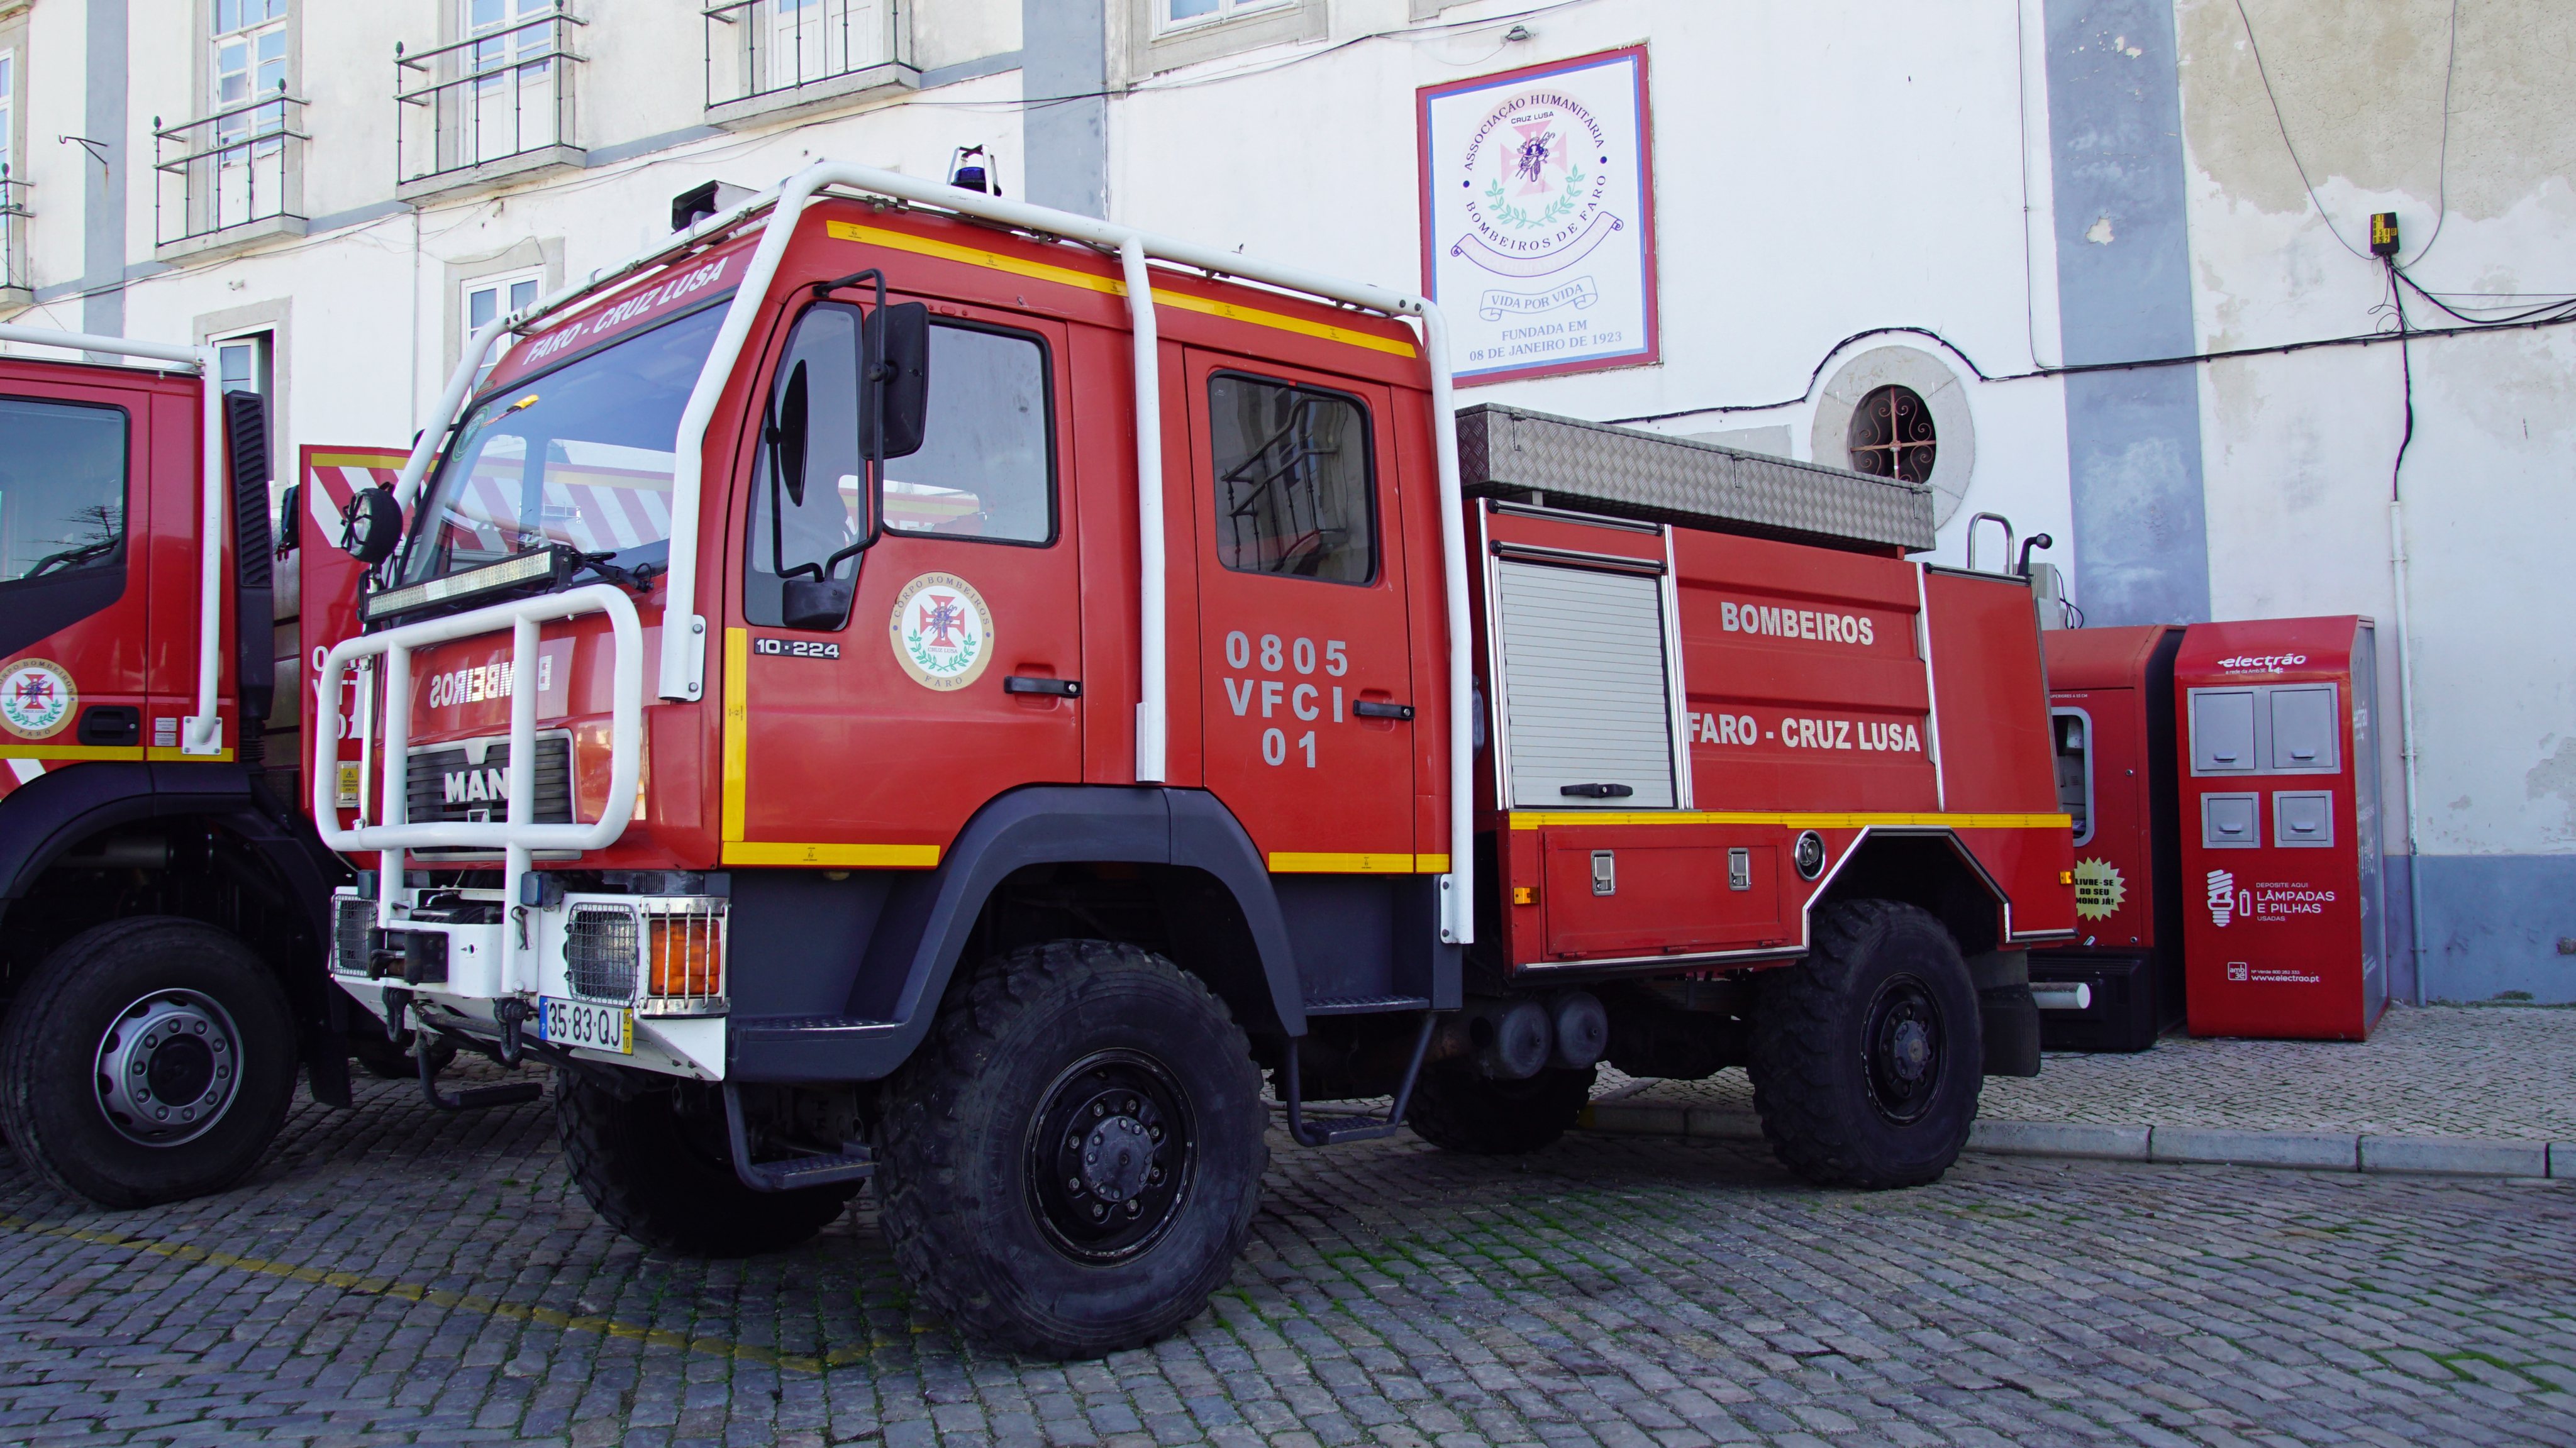 Portuguese MAN fire truck.